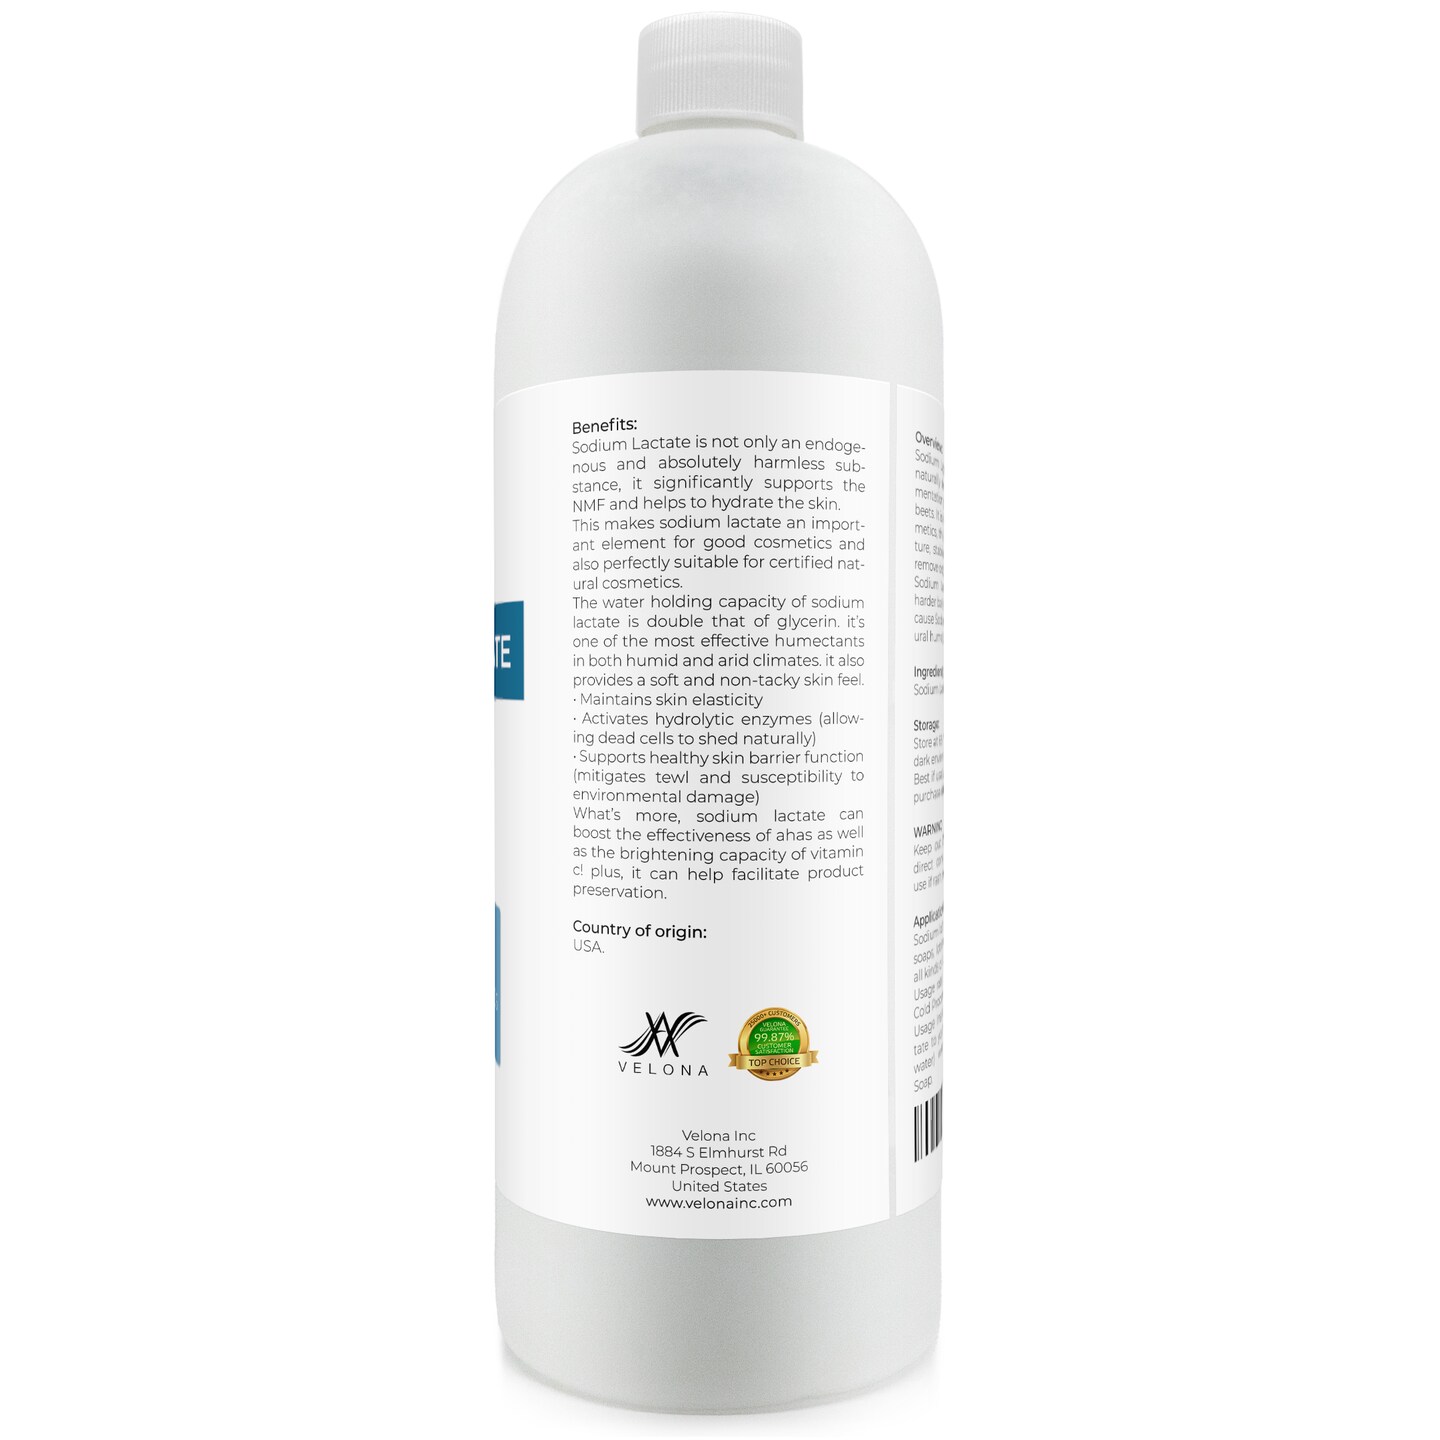 Sodium lactate 60% natural usp preservative liquid humectant 100